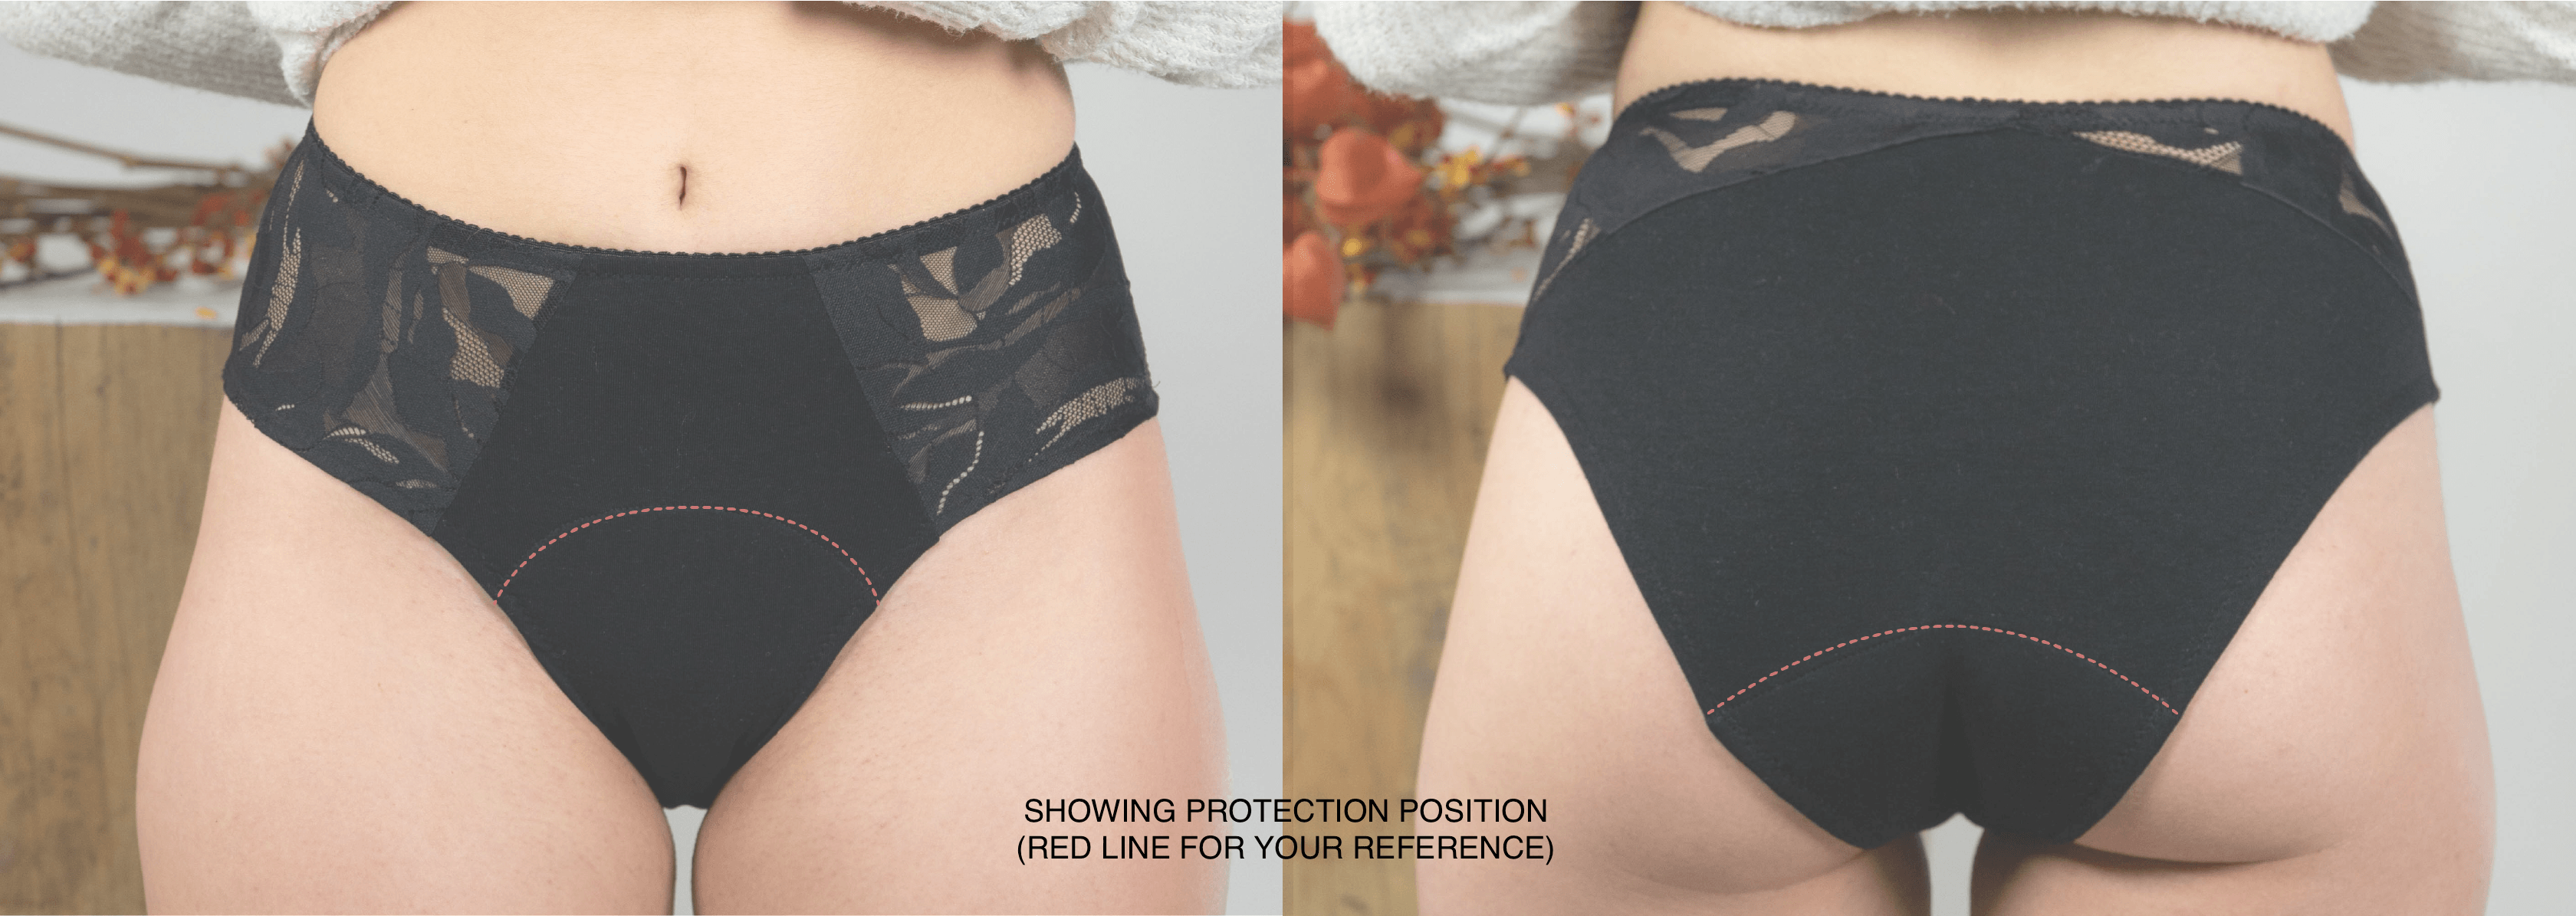 Women Panties Cotton Menstrual Period High Waist Brief/Underwear